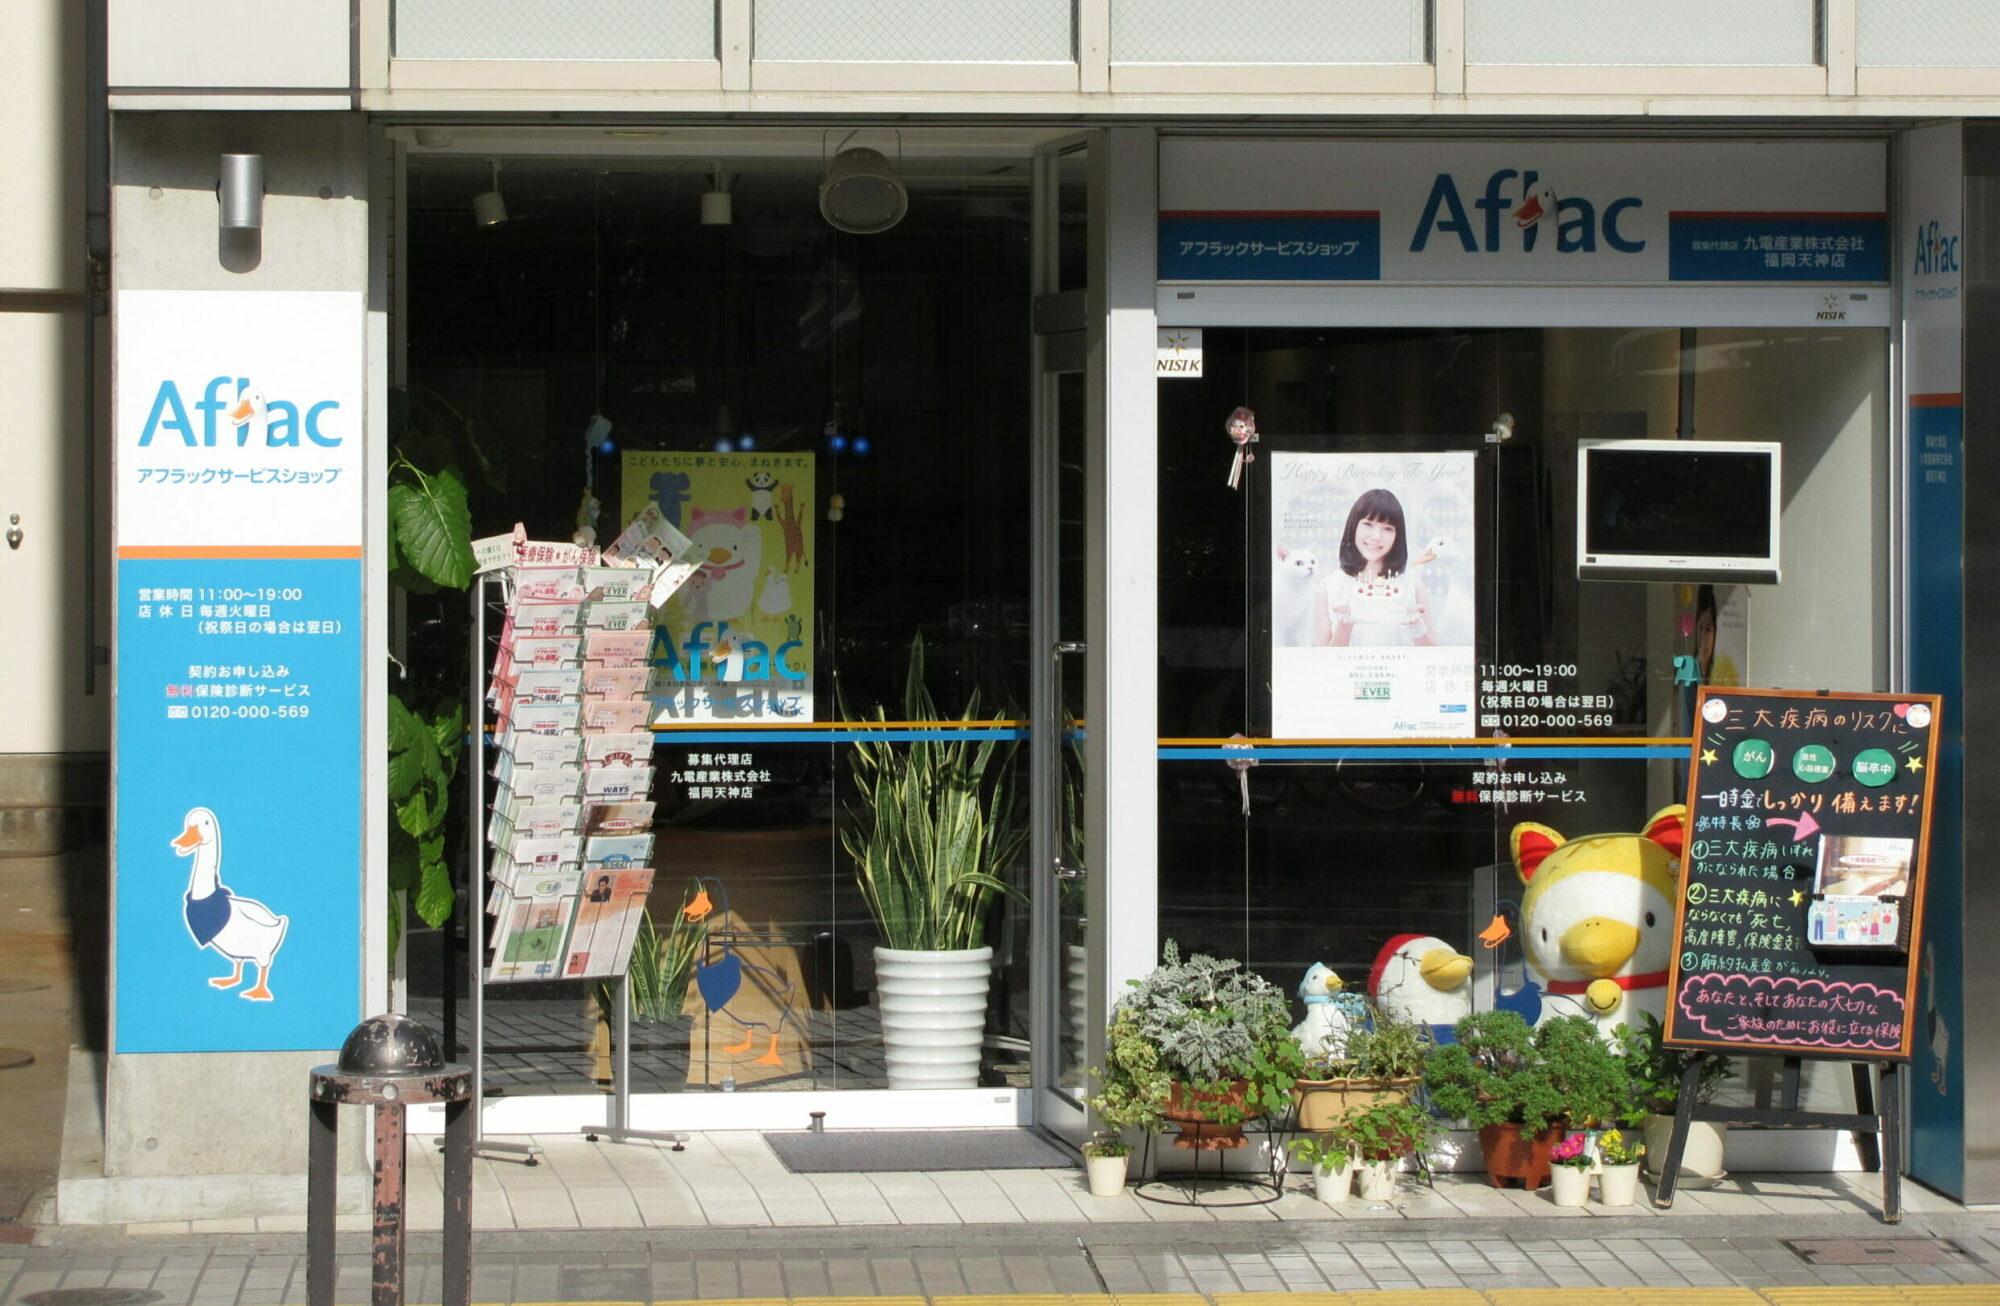 Aflacの日本販売は依然としてCOVID-19から回復しています